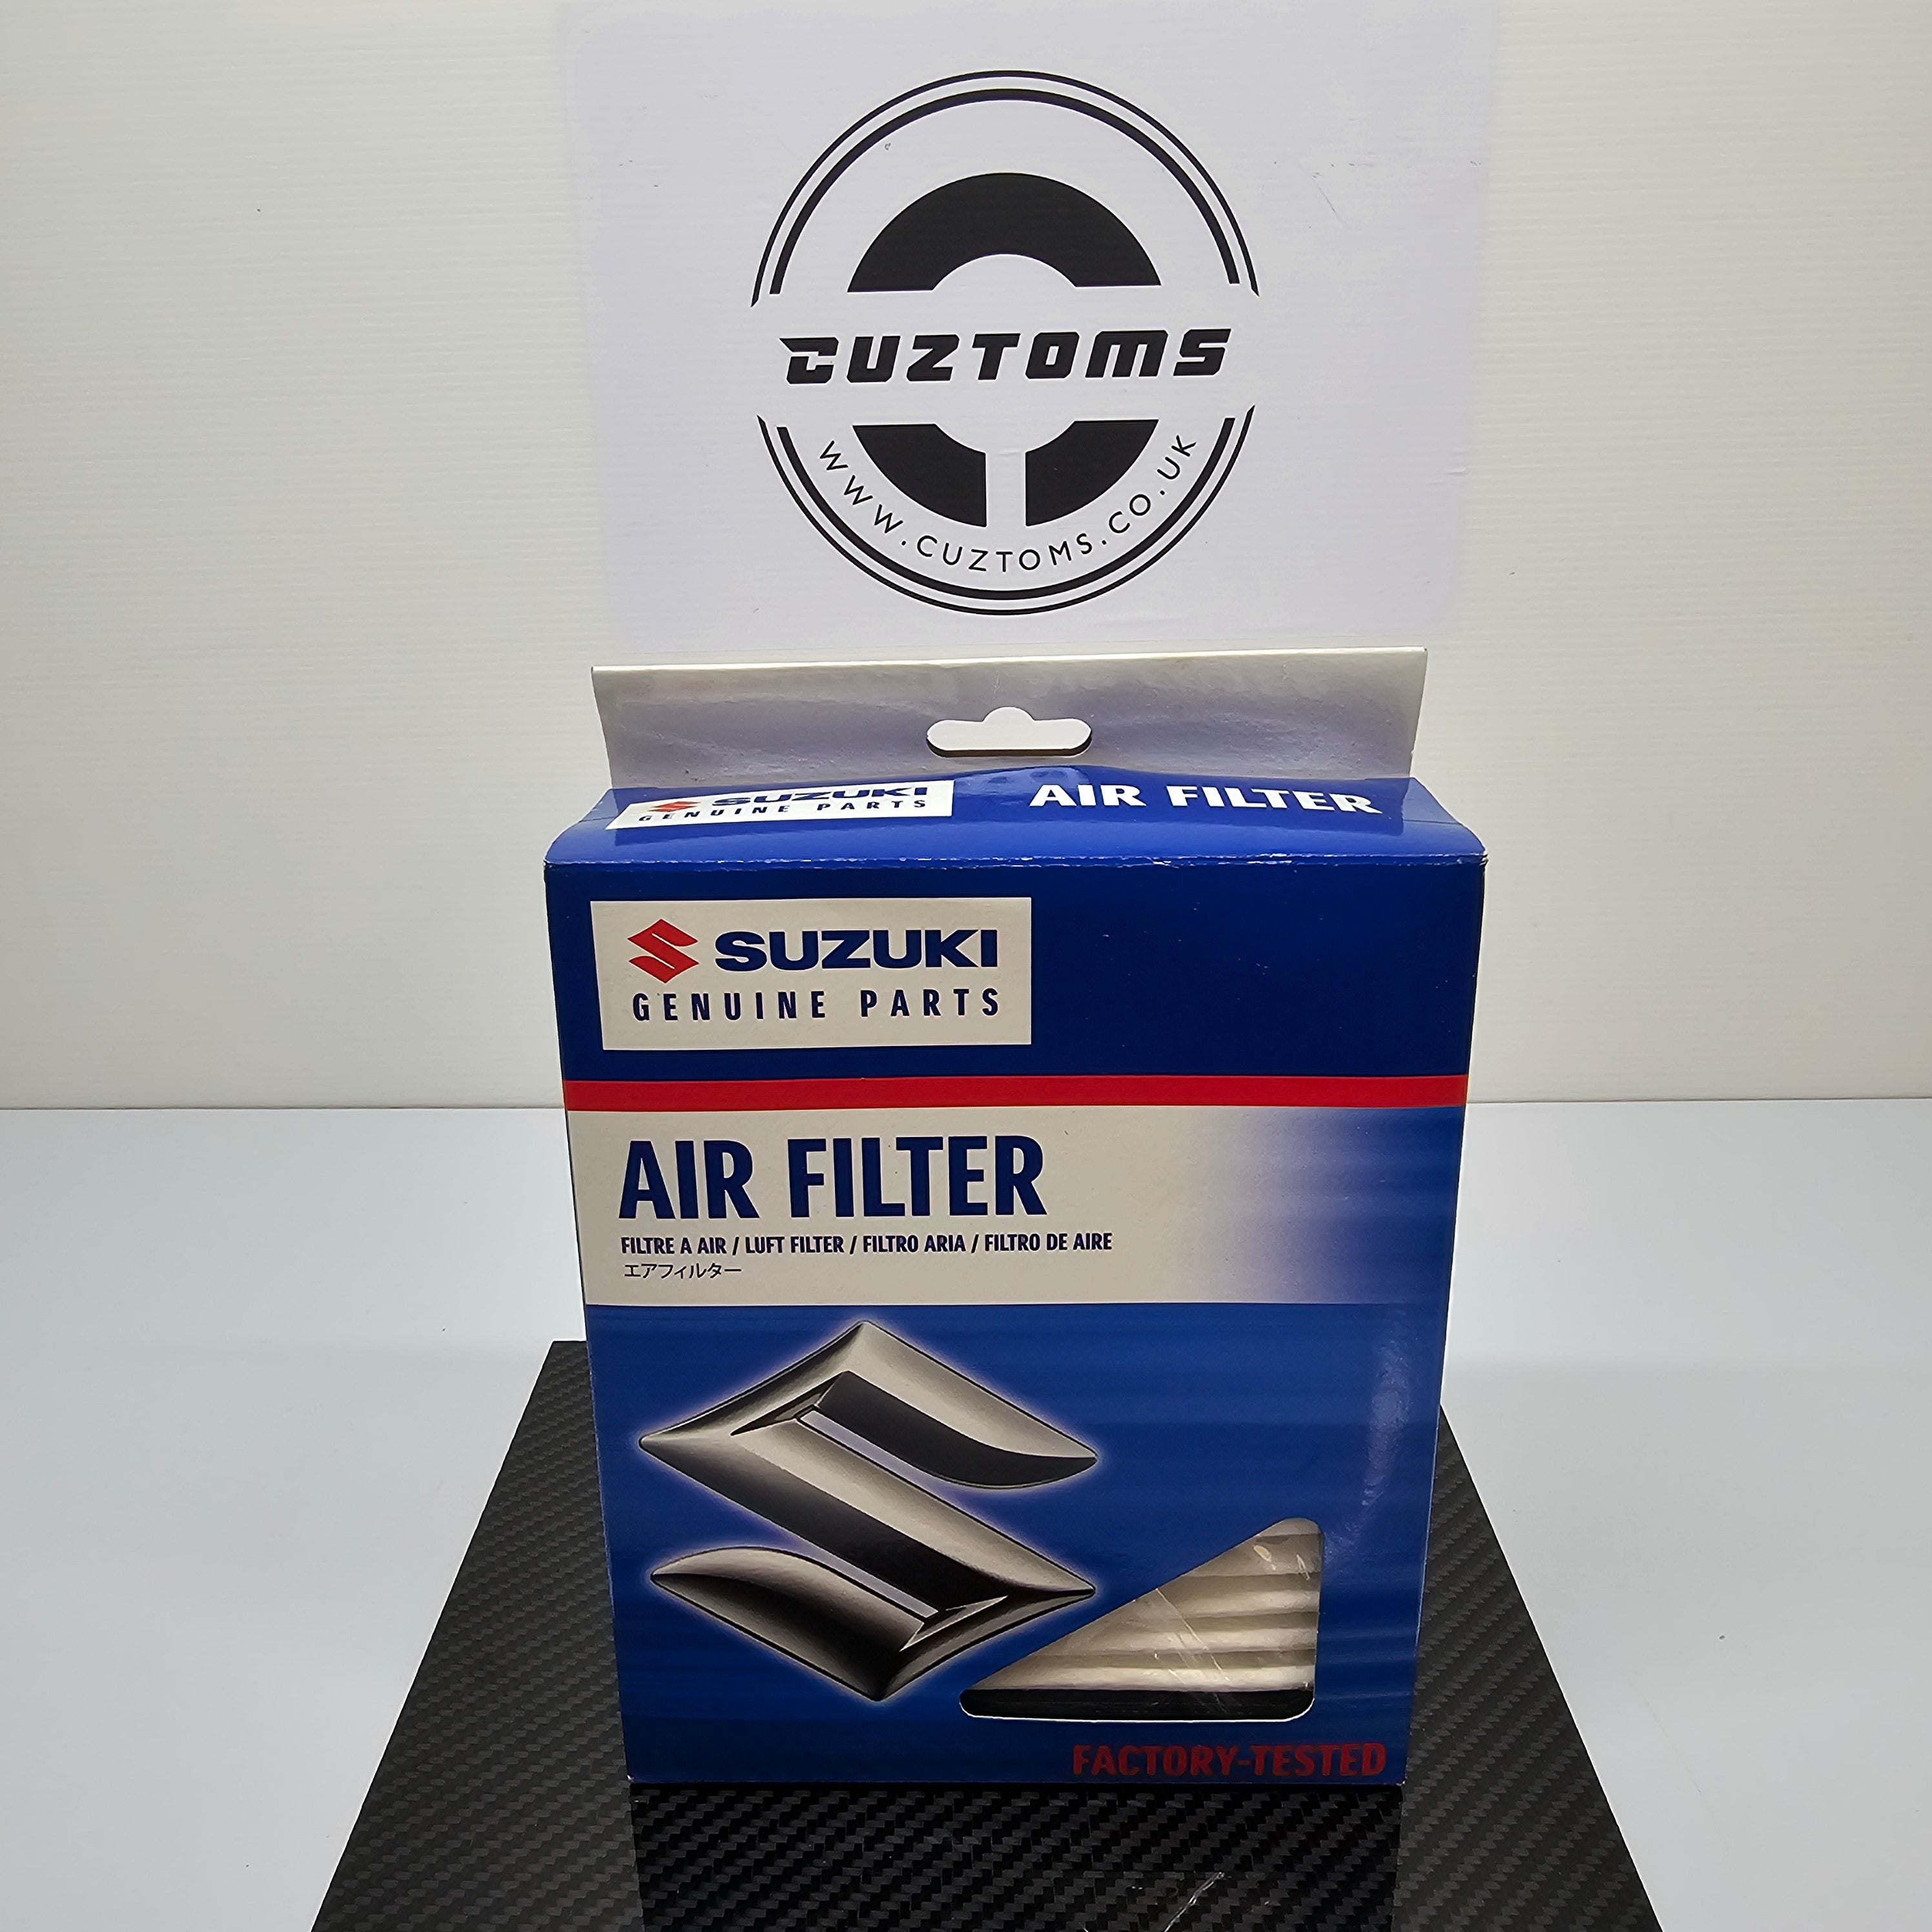 Genuine Air Filter Suzuki Jimny 1.3 16v M13A * 13780-81A00 *